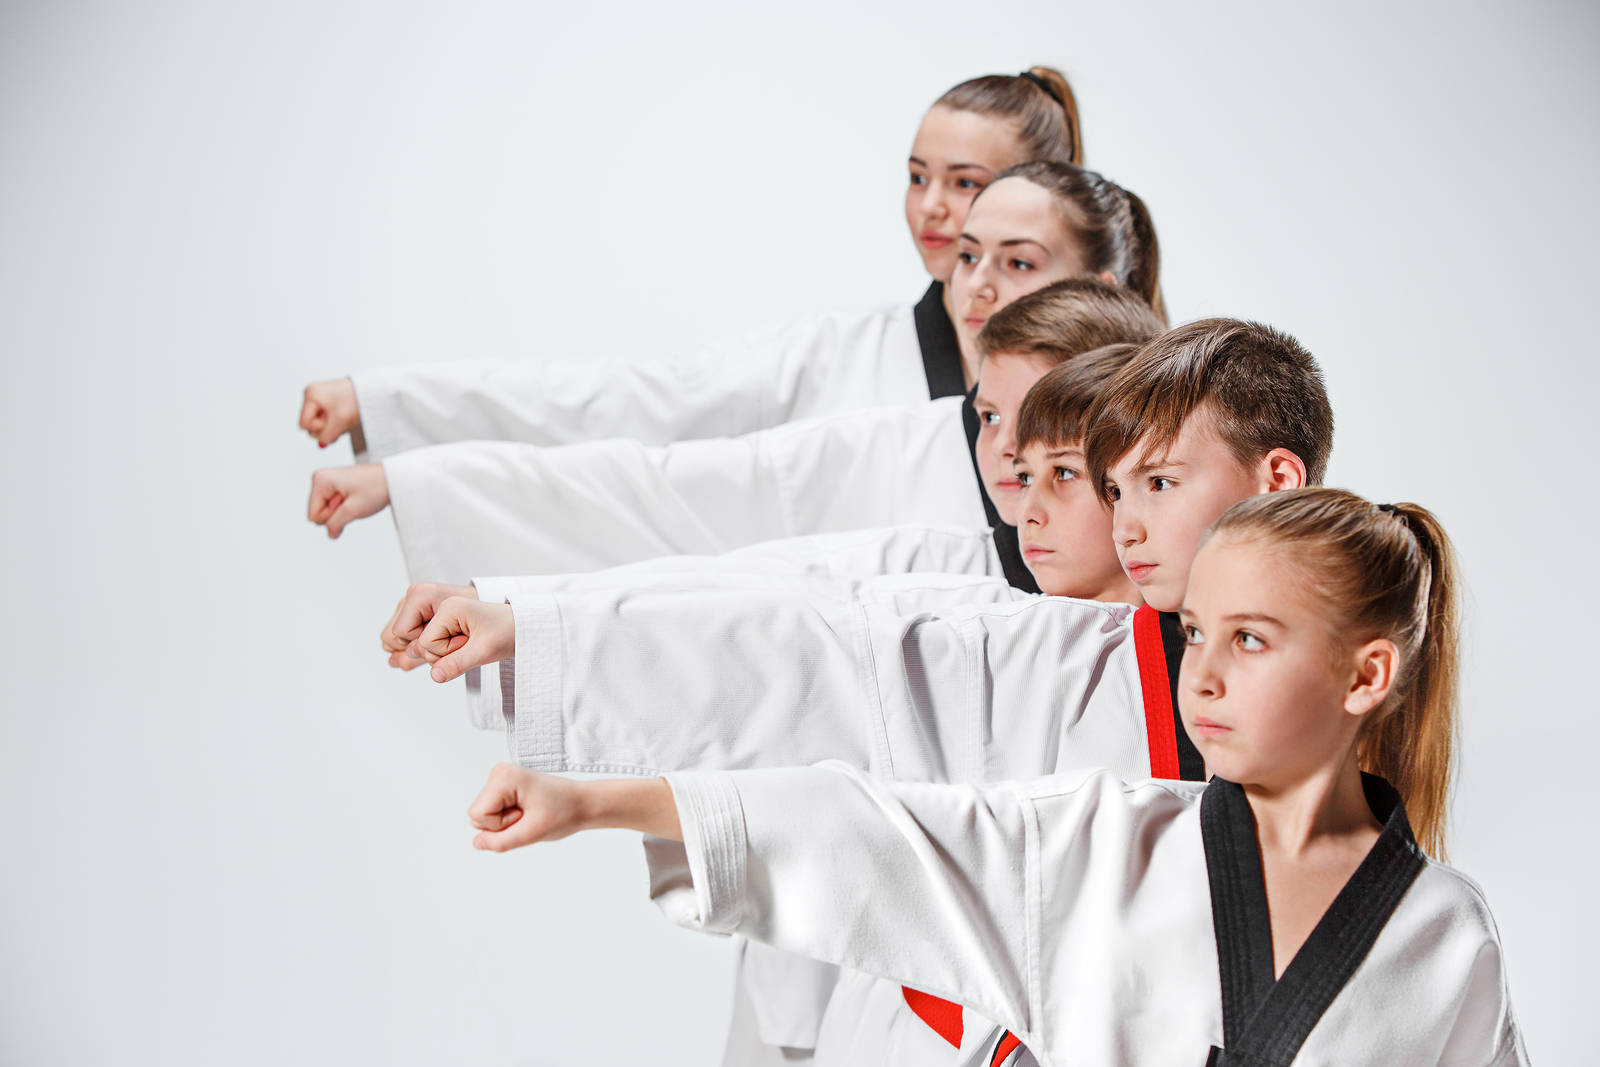 Quảng Bá Taekwondo Lớp Huấn Luyện Taekwondo Áp Phích Phong Cách Trung Quốc  Ban Triển Lãm Phong Cách Trung Quốc Hình Nền Cho Tải Về Miễn Phí  Pngtree